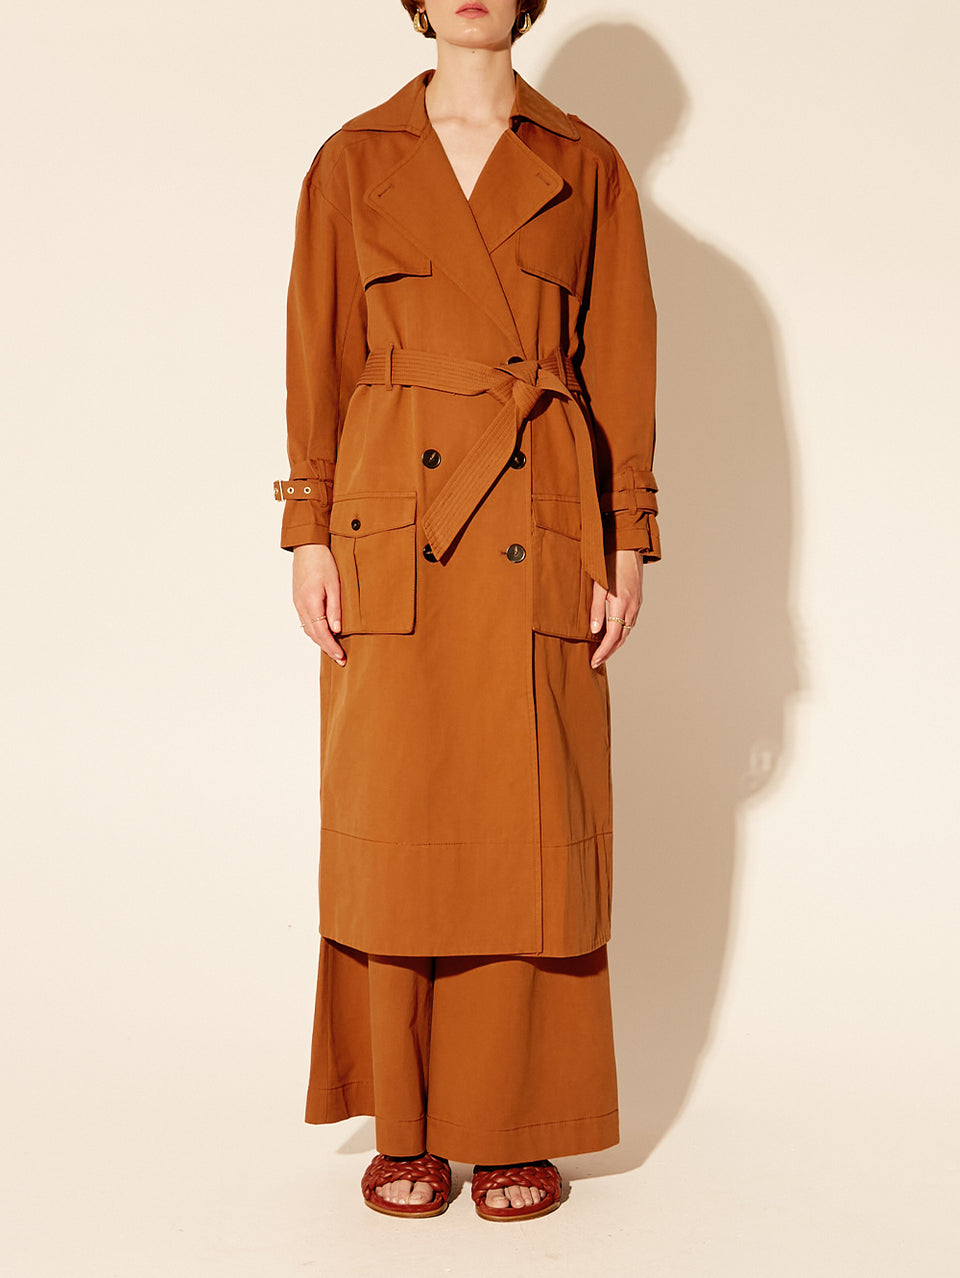 Carolina Trench Coat KIVARI | Model wears burnt orange trench coat